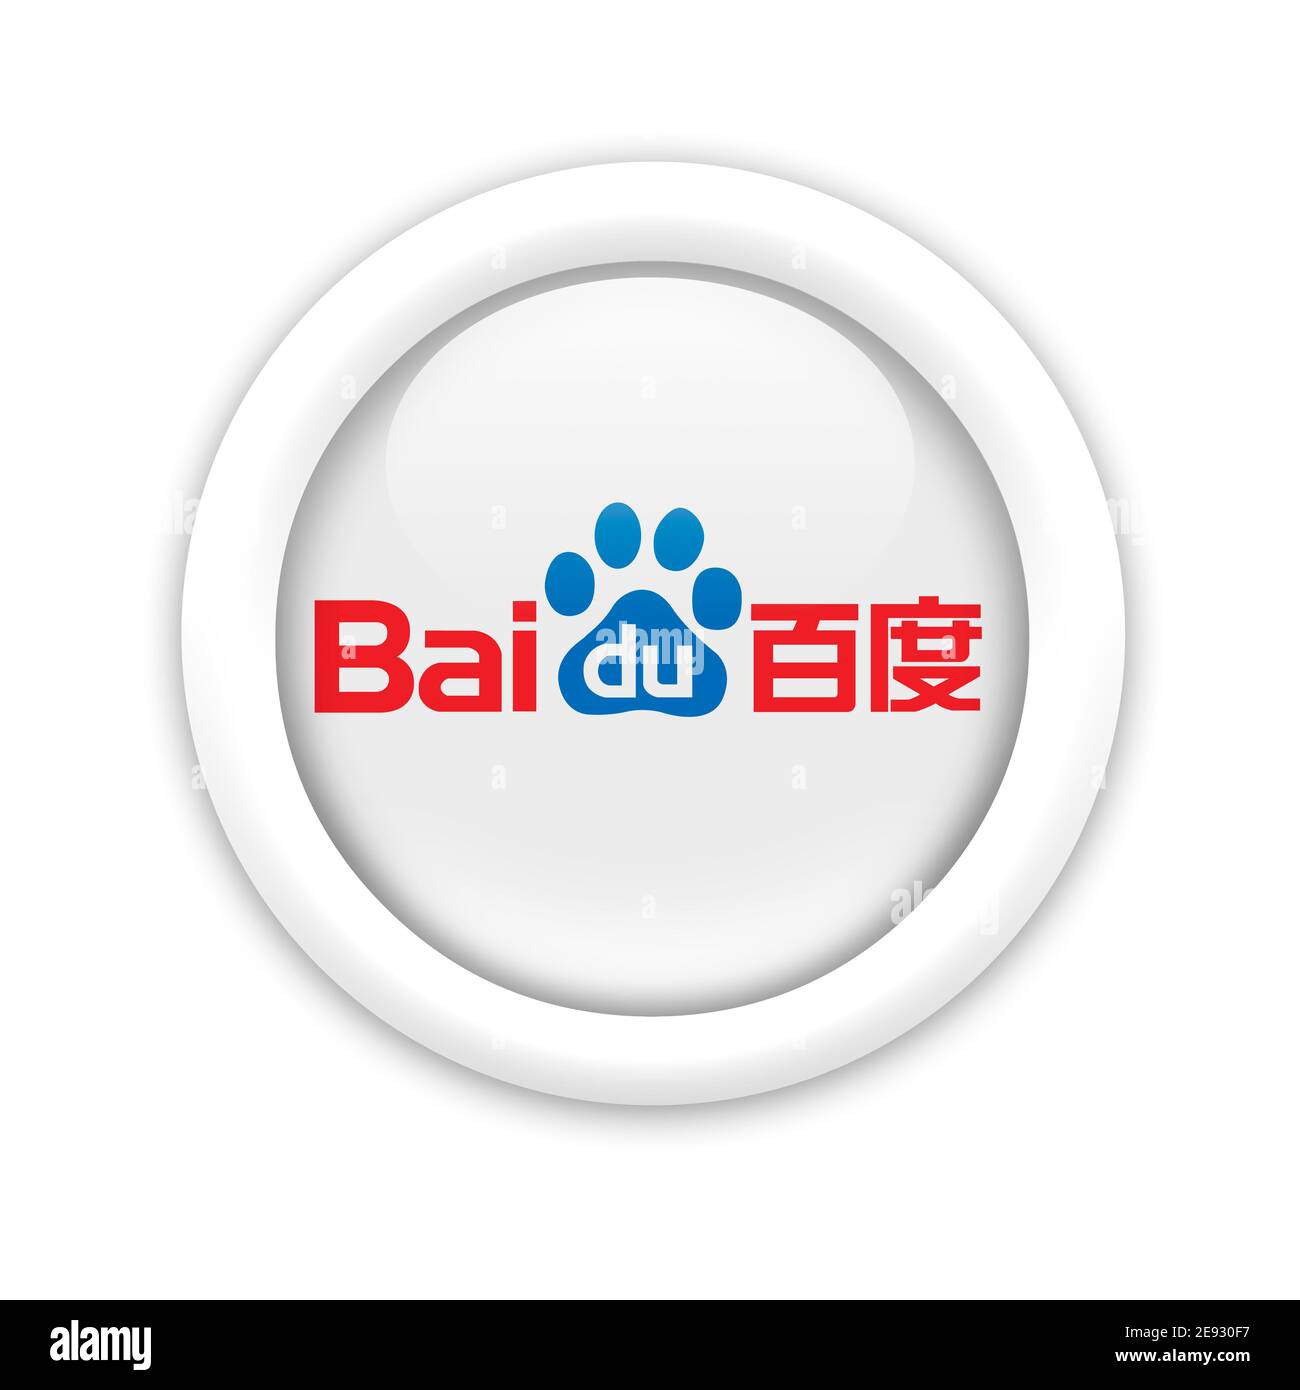 Bai du logo Stock Photo